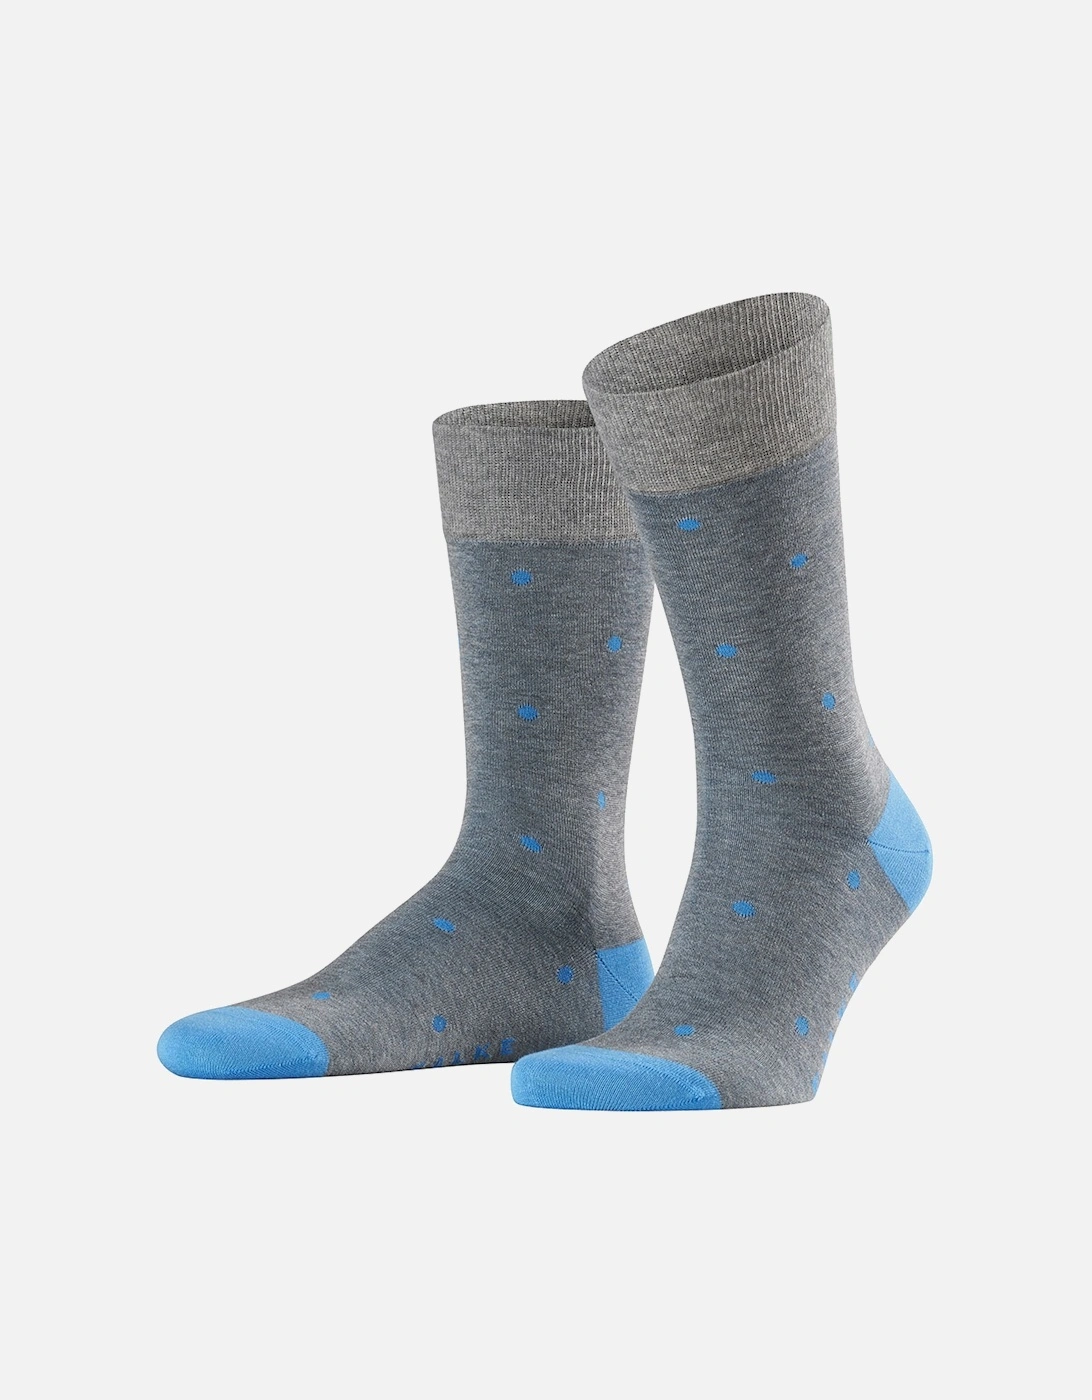 Dot Men's Socks, 2 of 1